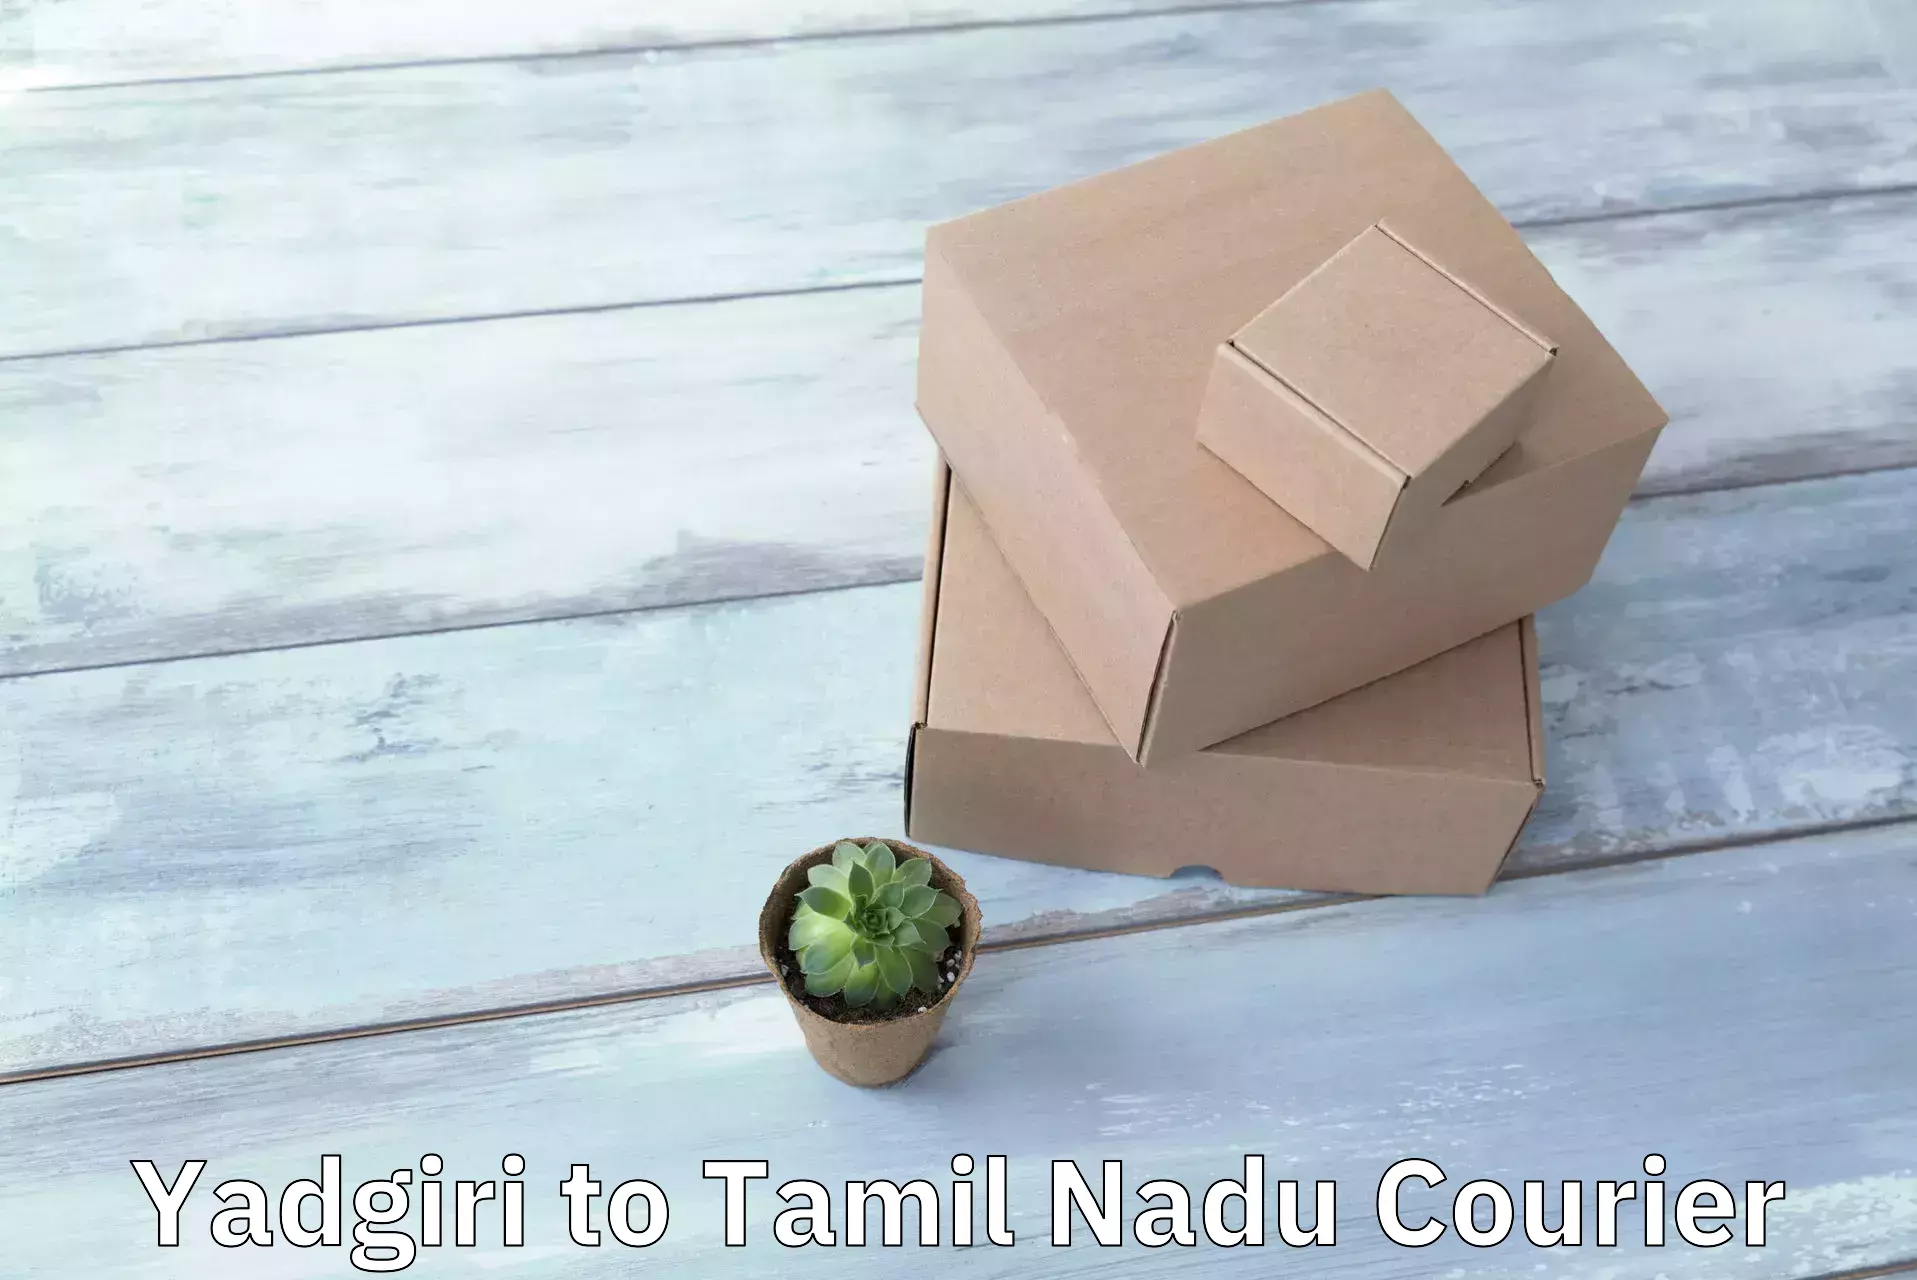 Specialized shipment handling Yadgiri to Tamil Nadu